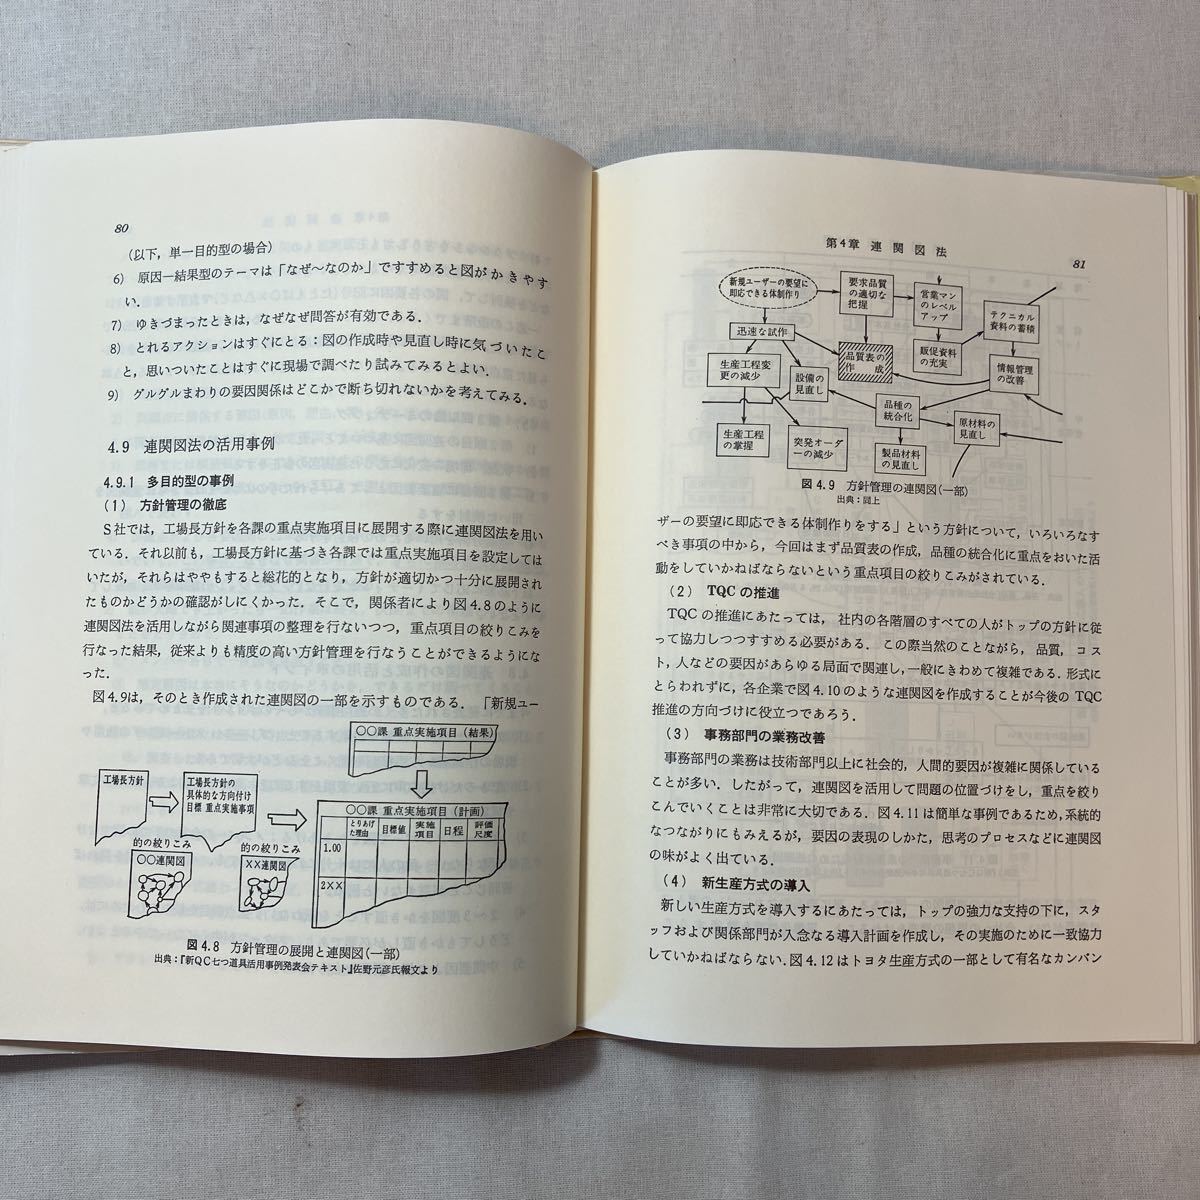 zaa-381♪管理者スタッフの新QC七つ道具単行本 (ハードカバー) 1979/5/1 日本技能連盟( 著 ) 日科技連出版社